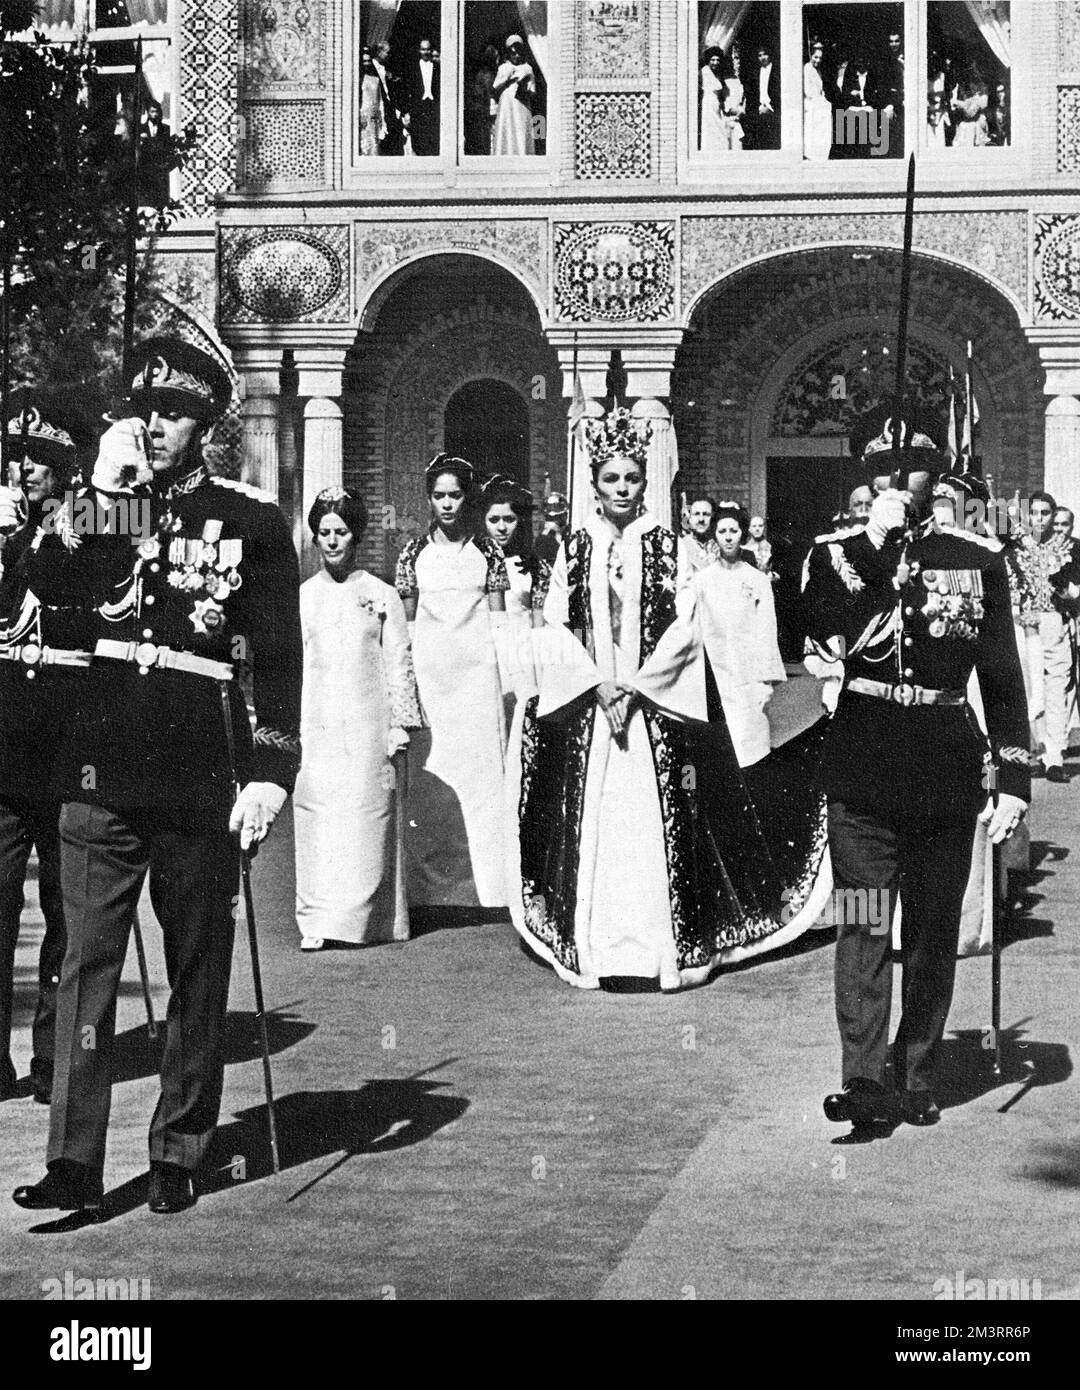 Königin Farah Dibah von Iran (1938-) verlässt den Golestan-Palast nach der Krönung des Schahs von Iran Mohammad Reza Pahlavi (1919-1980). Am 26.. Oktober 1967, 26 Jahre nach seiner Herrschaft als Schah („König“), übernahm er in einer aufwendigen Krönungszeremonie in Teheran den alten Titel Shahanshah („Kaiser“ oder „König der Könige“). Datum: 1967 Stockfoto